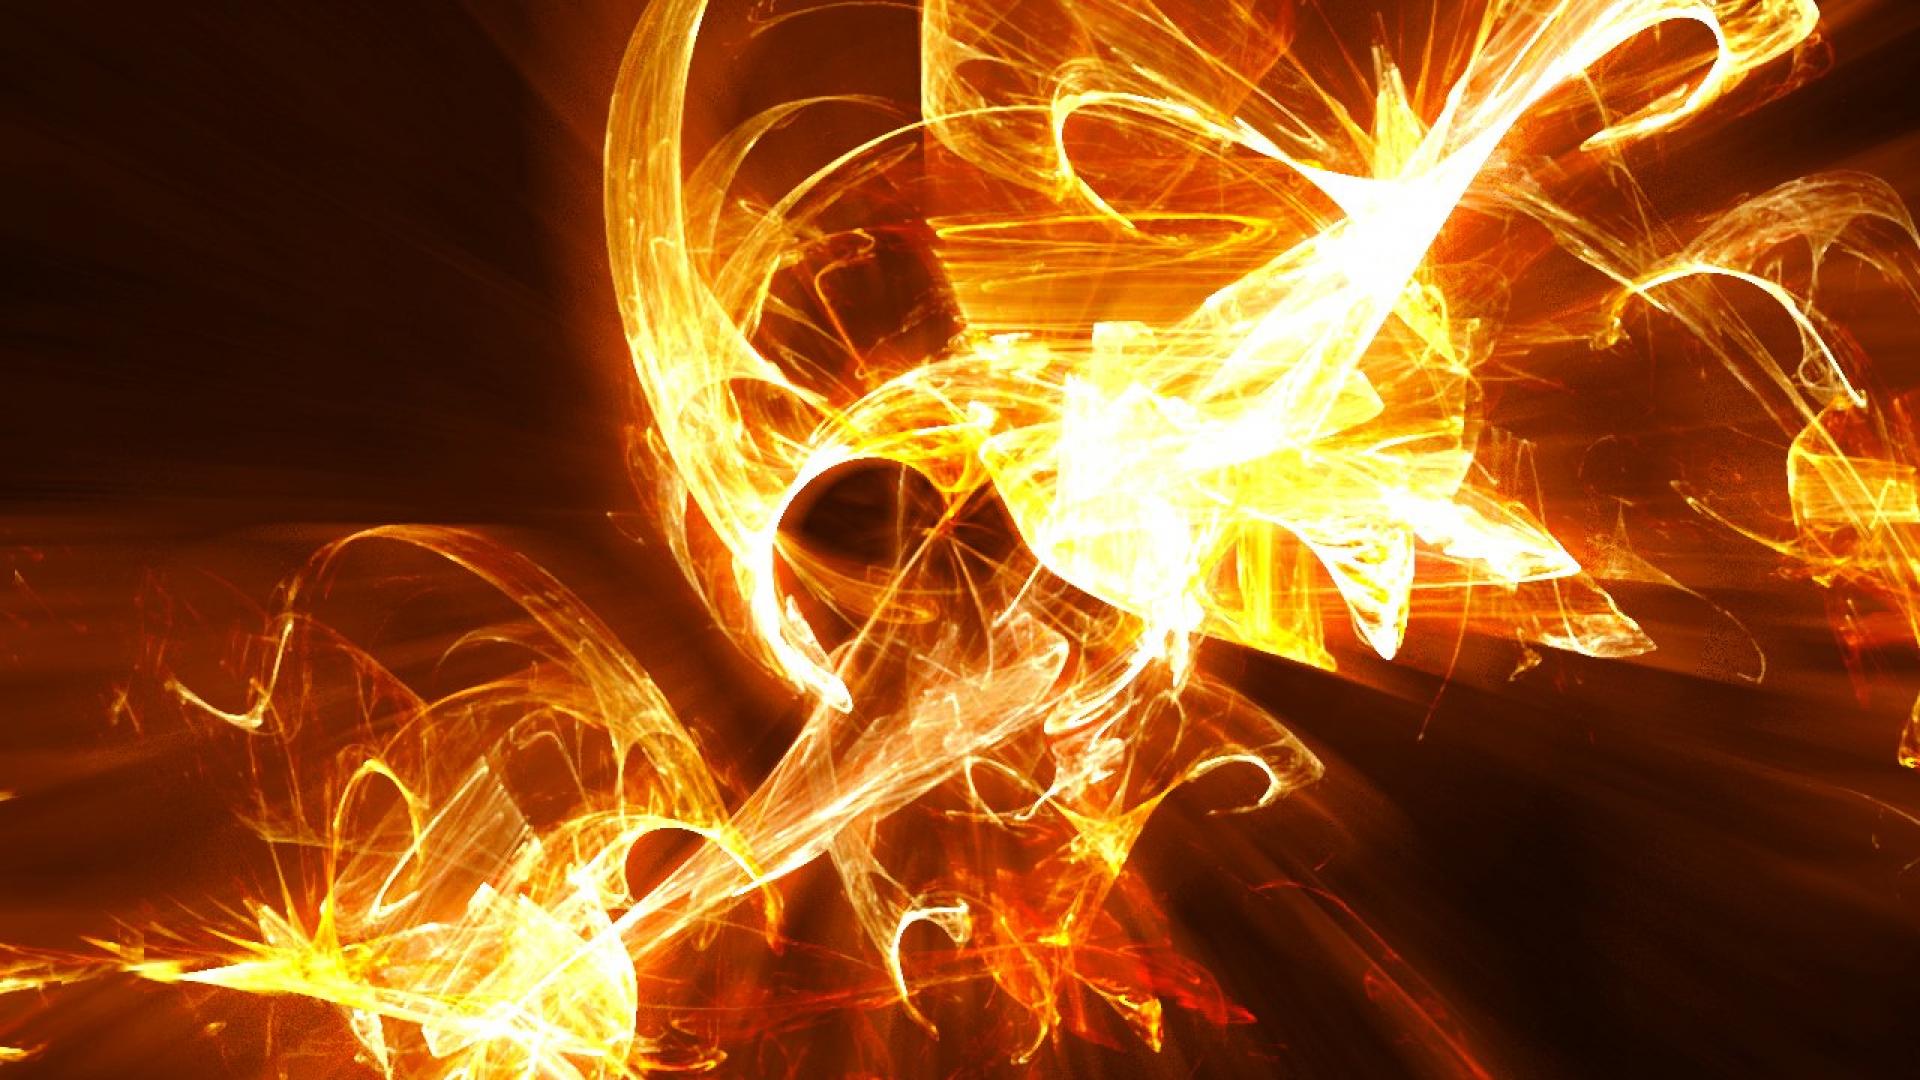 Fire Flames Abstract HD Wallpaper Hq Desktop